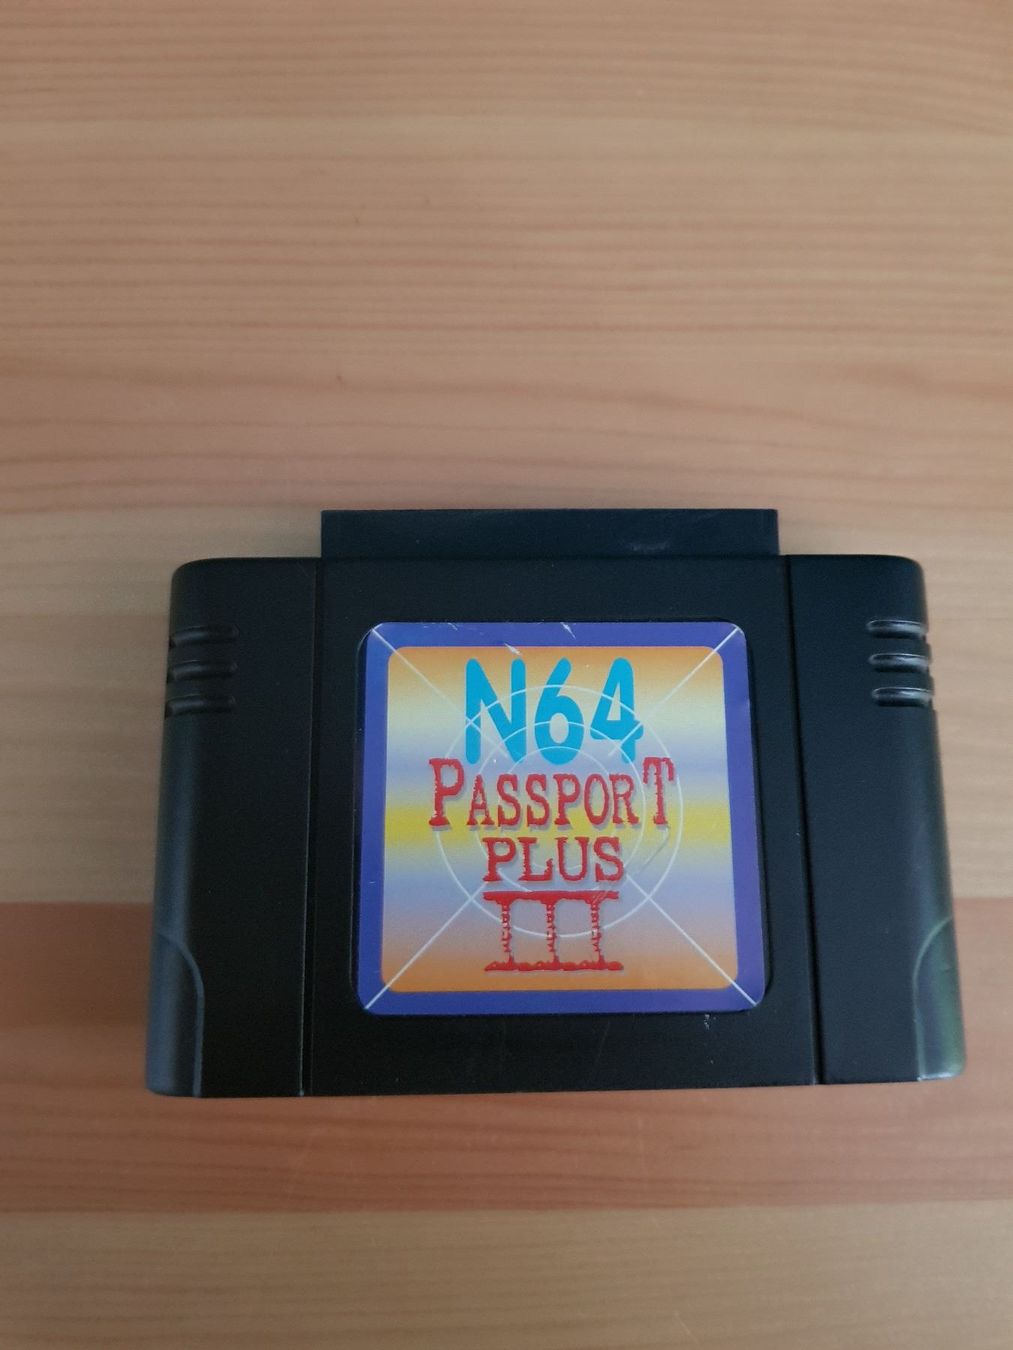 n64 passport